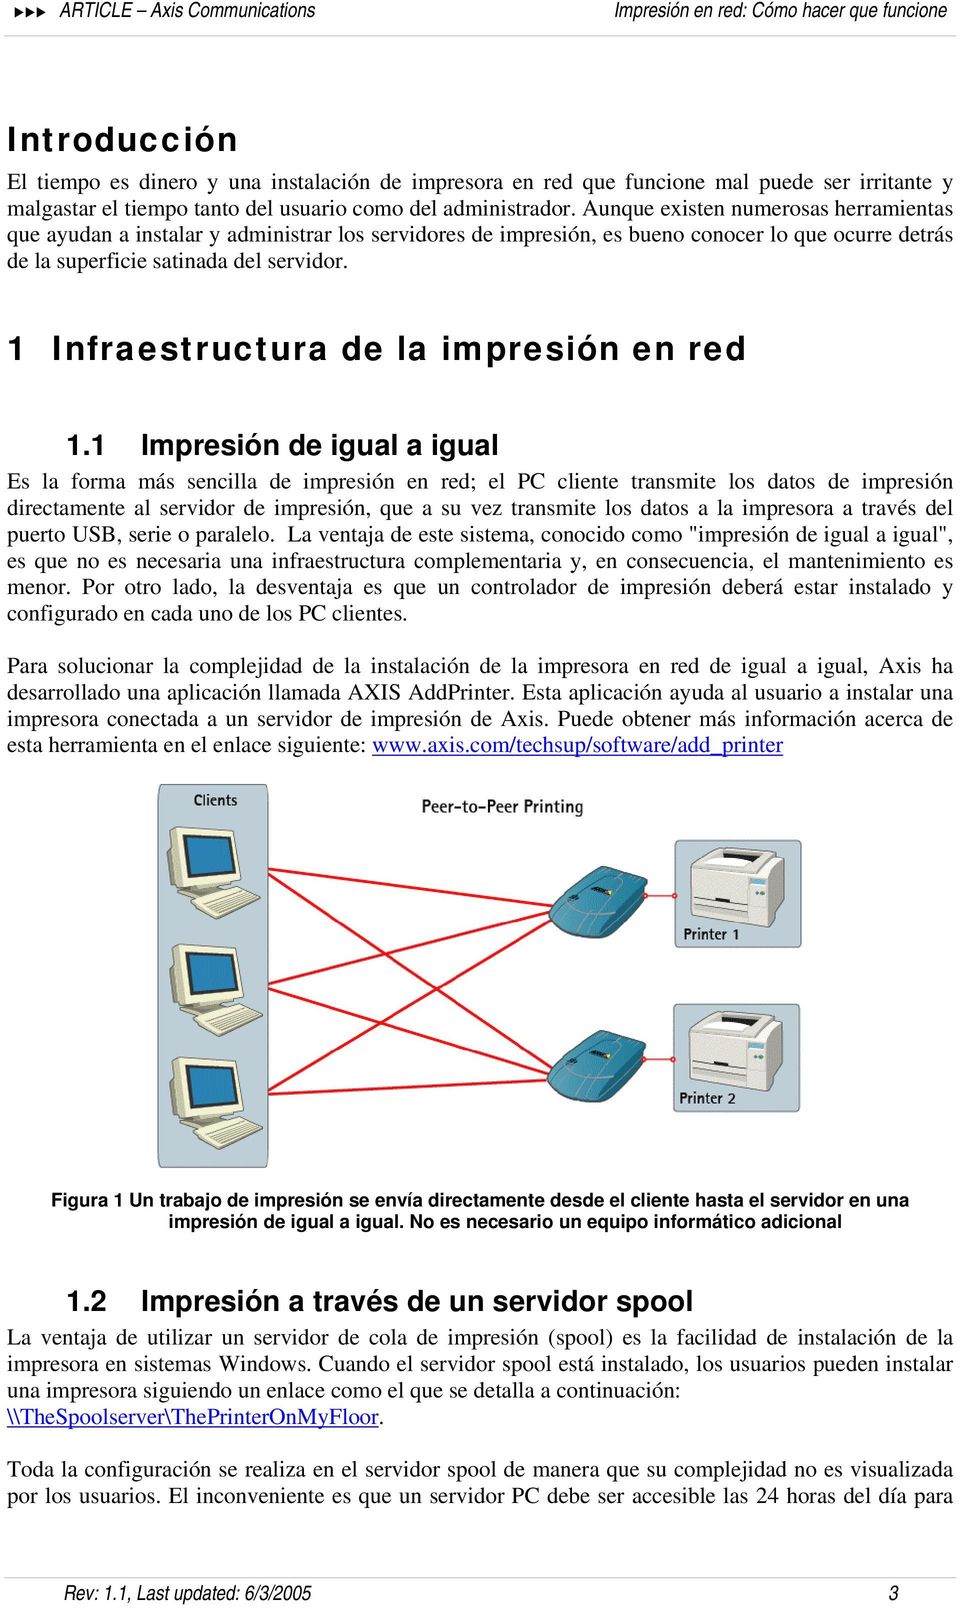 Infraestructura de la impresión en red.